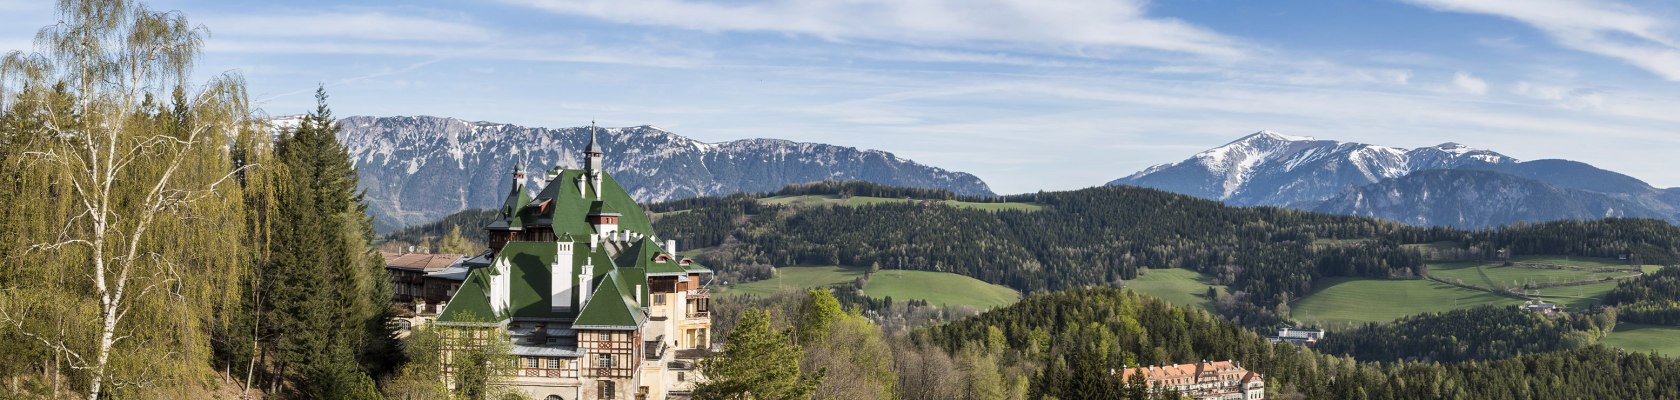 Sommerfrische Semmering - Grandhotels und Villen, © Wiener Alpen, Franz Zwickl